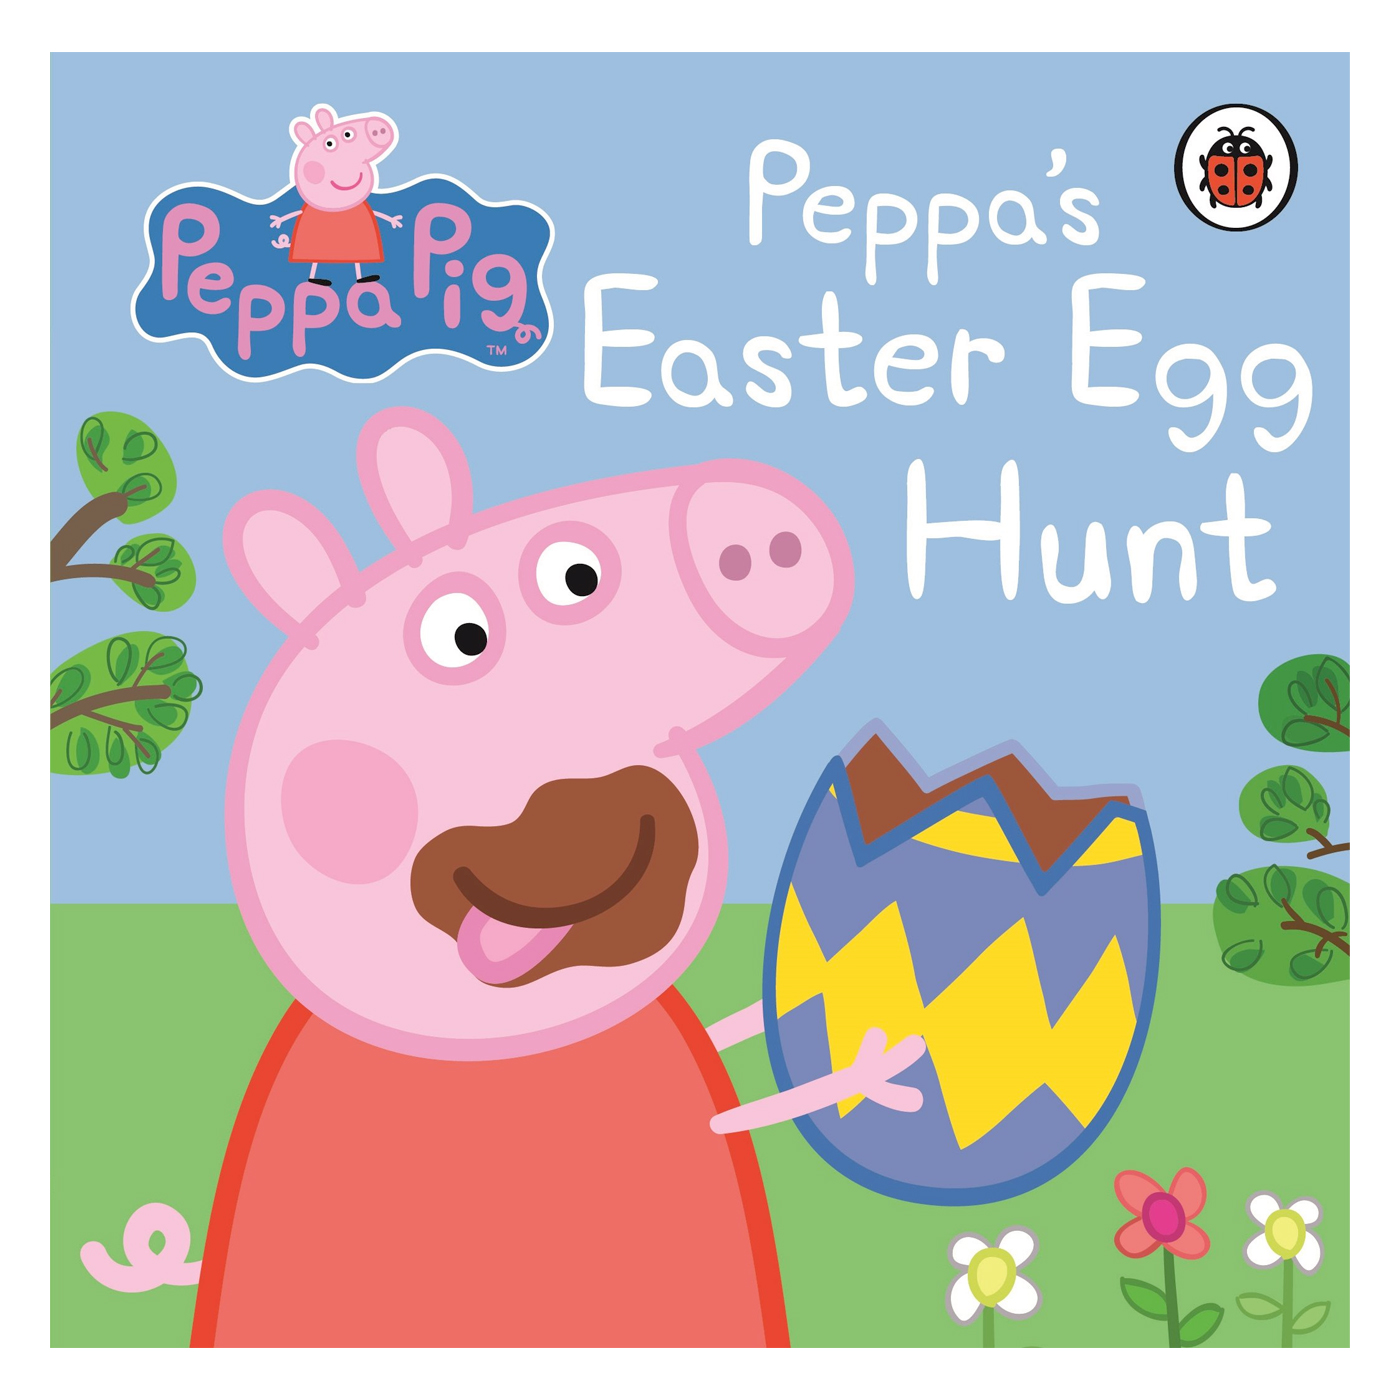  Peppa Pig: Peppa's Easter Egg Hunt